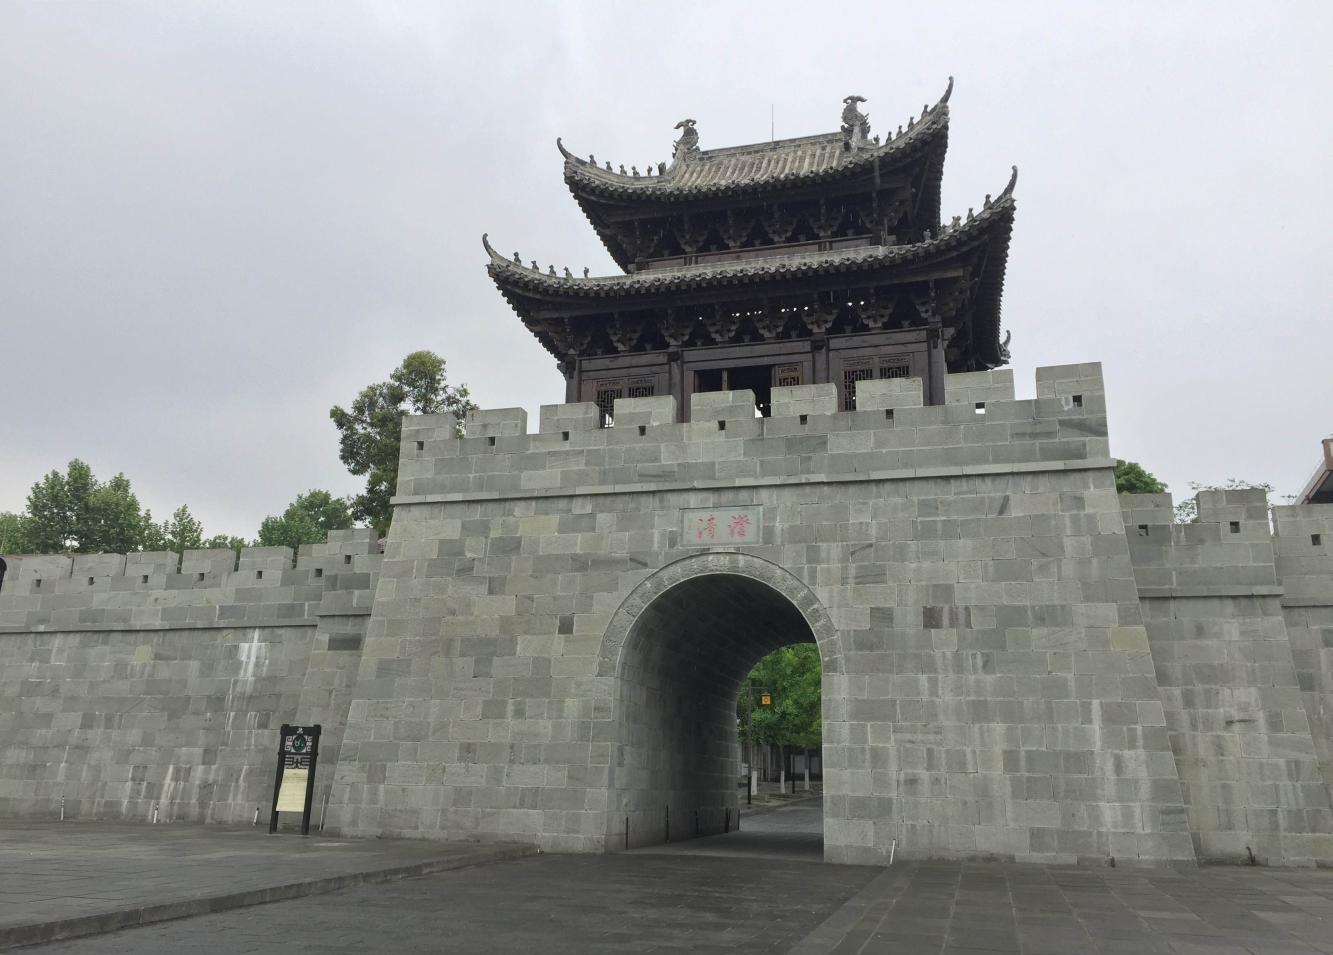 中国四大古城, 历史悠久的四座城池, 哪一座更让你着迷呢?